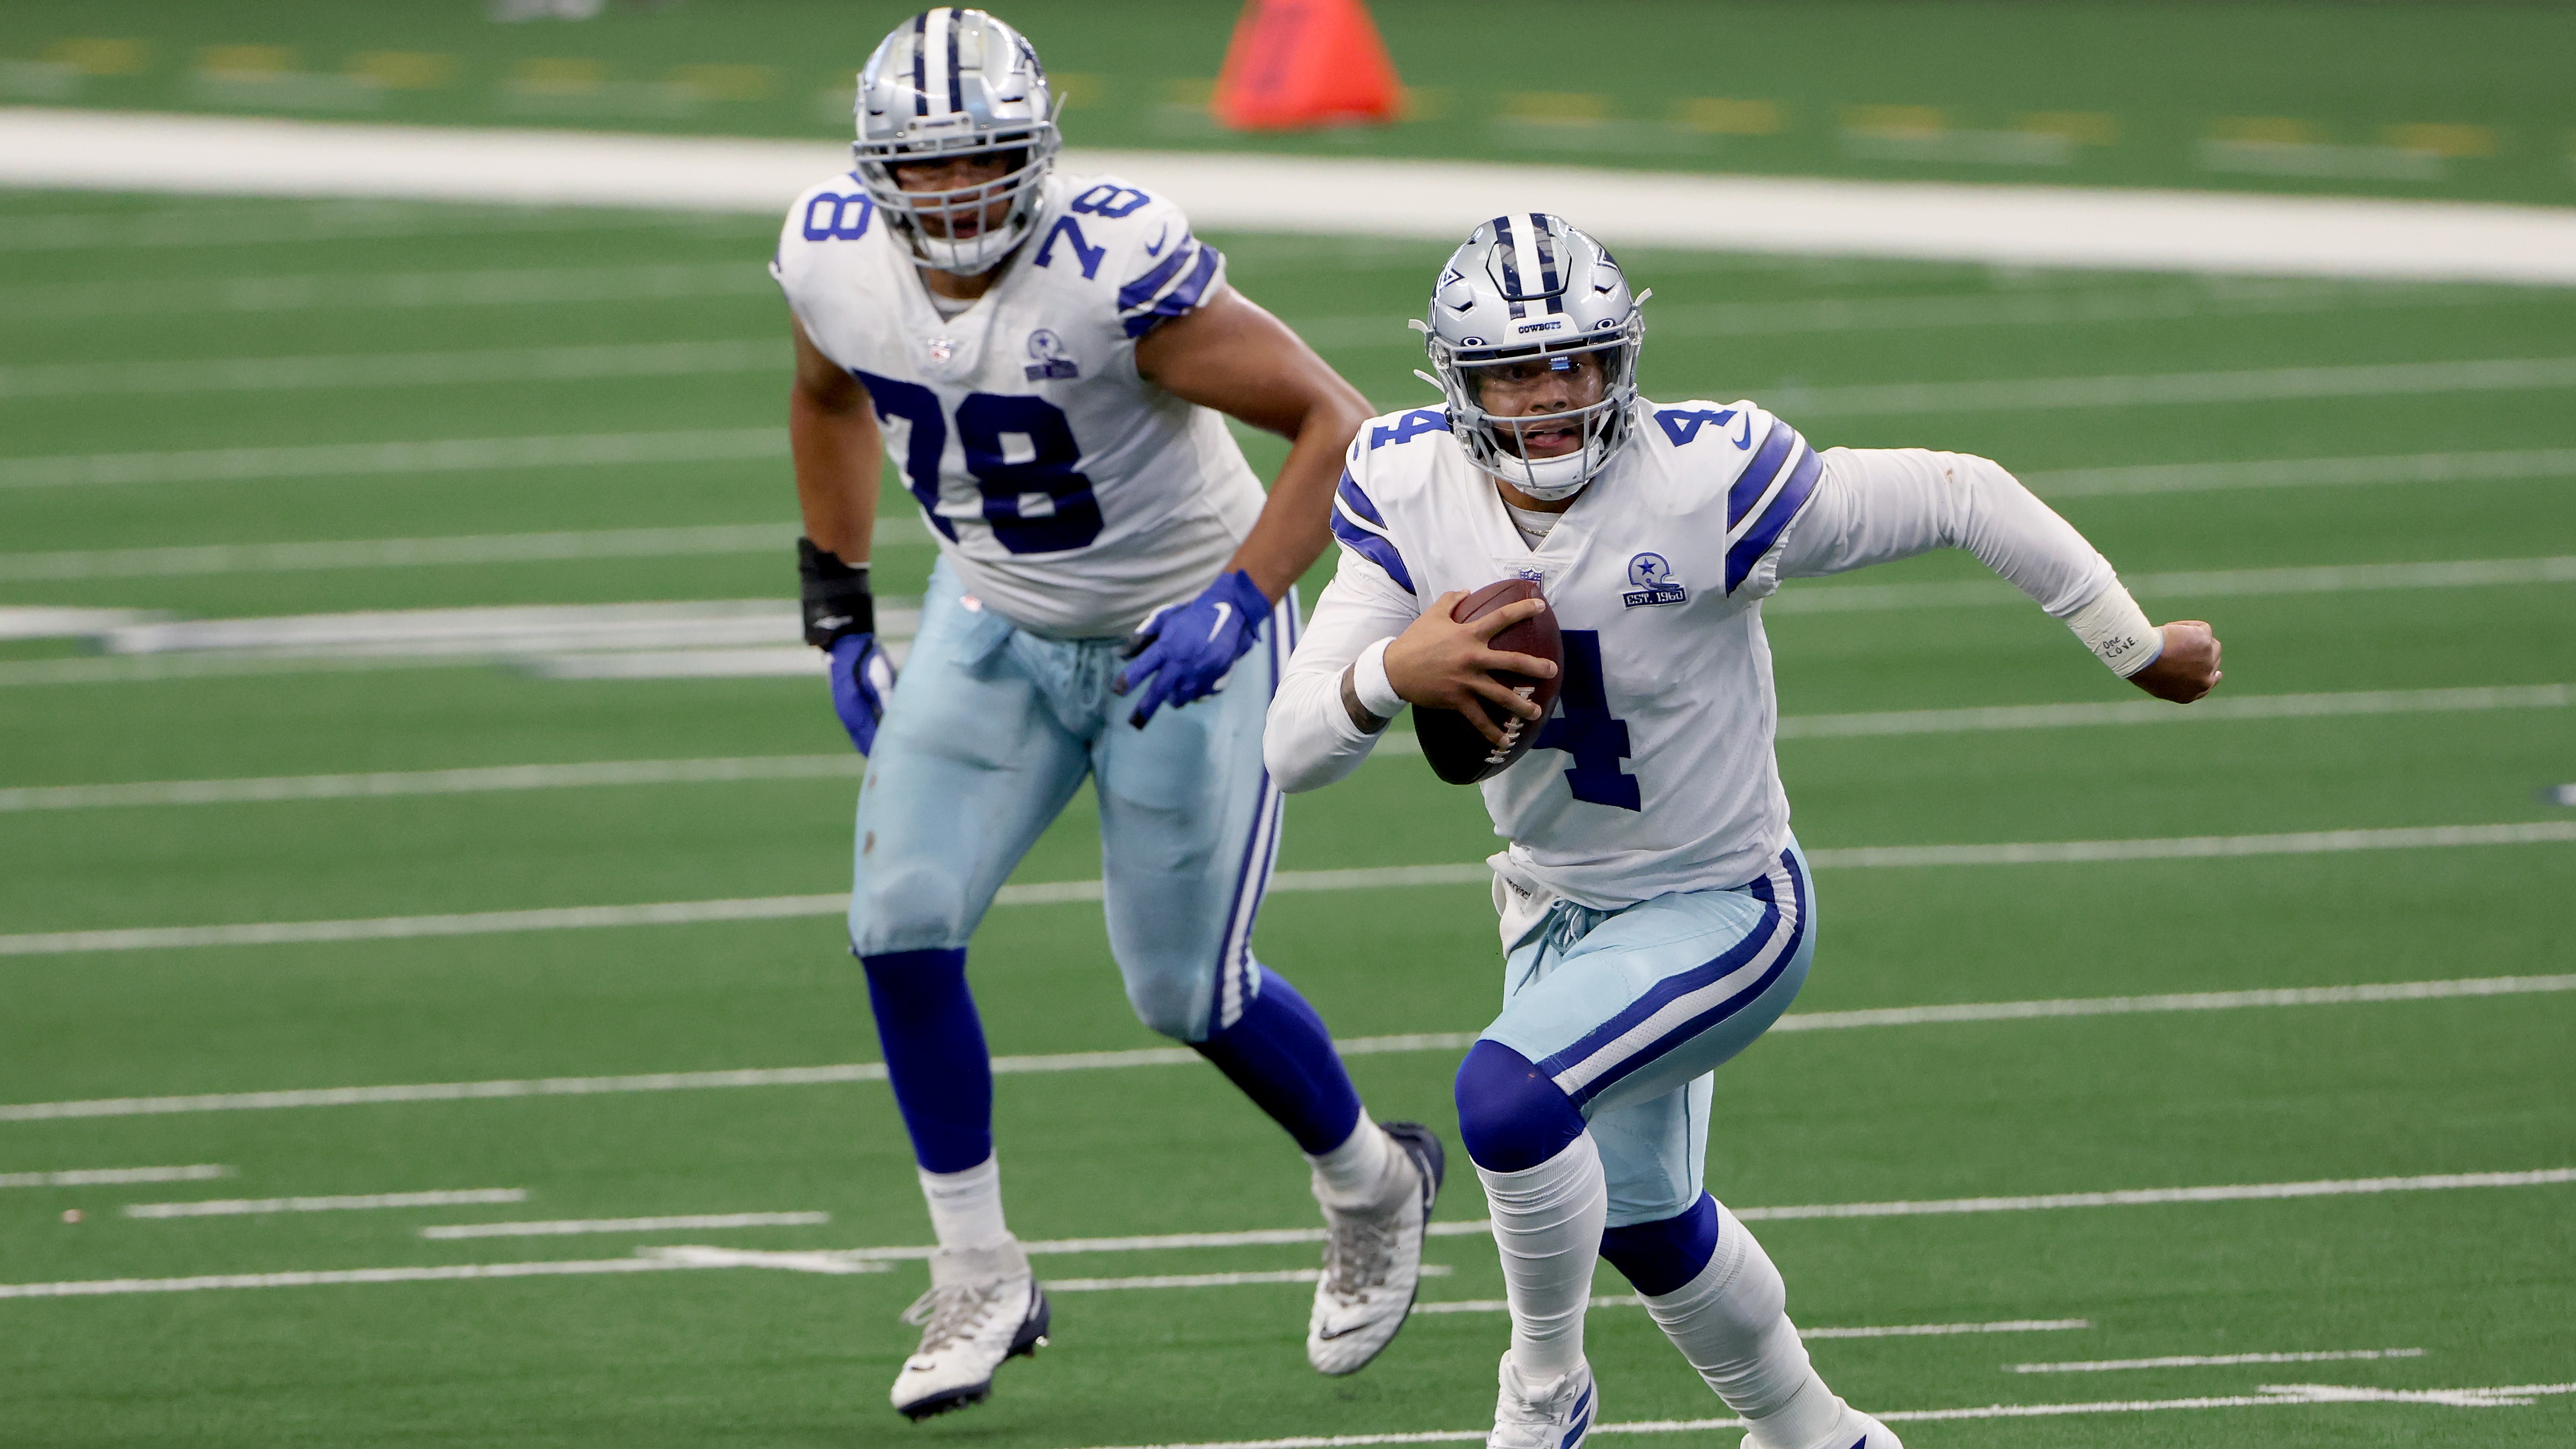 Dallas Cowboys quarterback Dak Prescott scrambles with the ball in hand